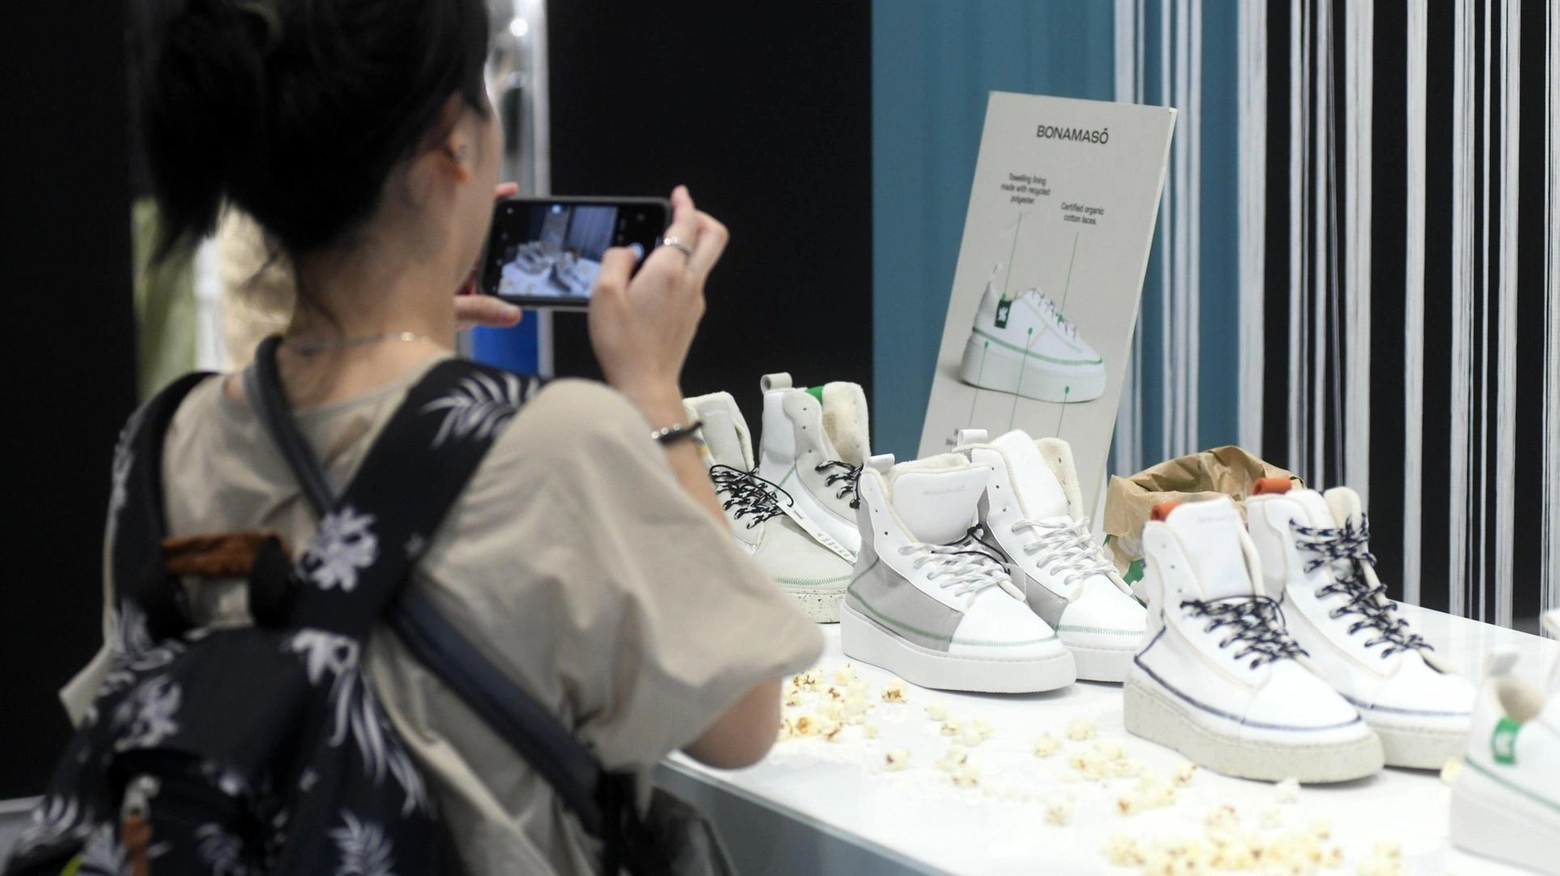 Il settore calzaturiero toscano si prepara per Micam Milano, importante fiera internazionale che presenta le nuove collezioni invernali di 923 brand. L'evento rappresenta un momento cruciale per valutare l'innovazione, l'attrattiva per operatori professionali e la sostenibilità del comparto.